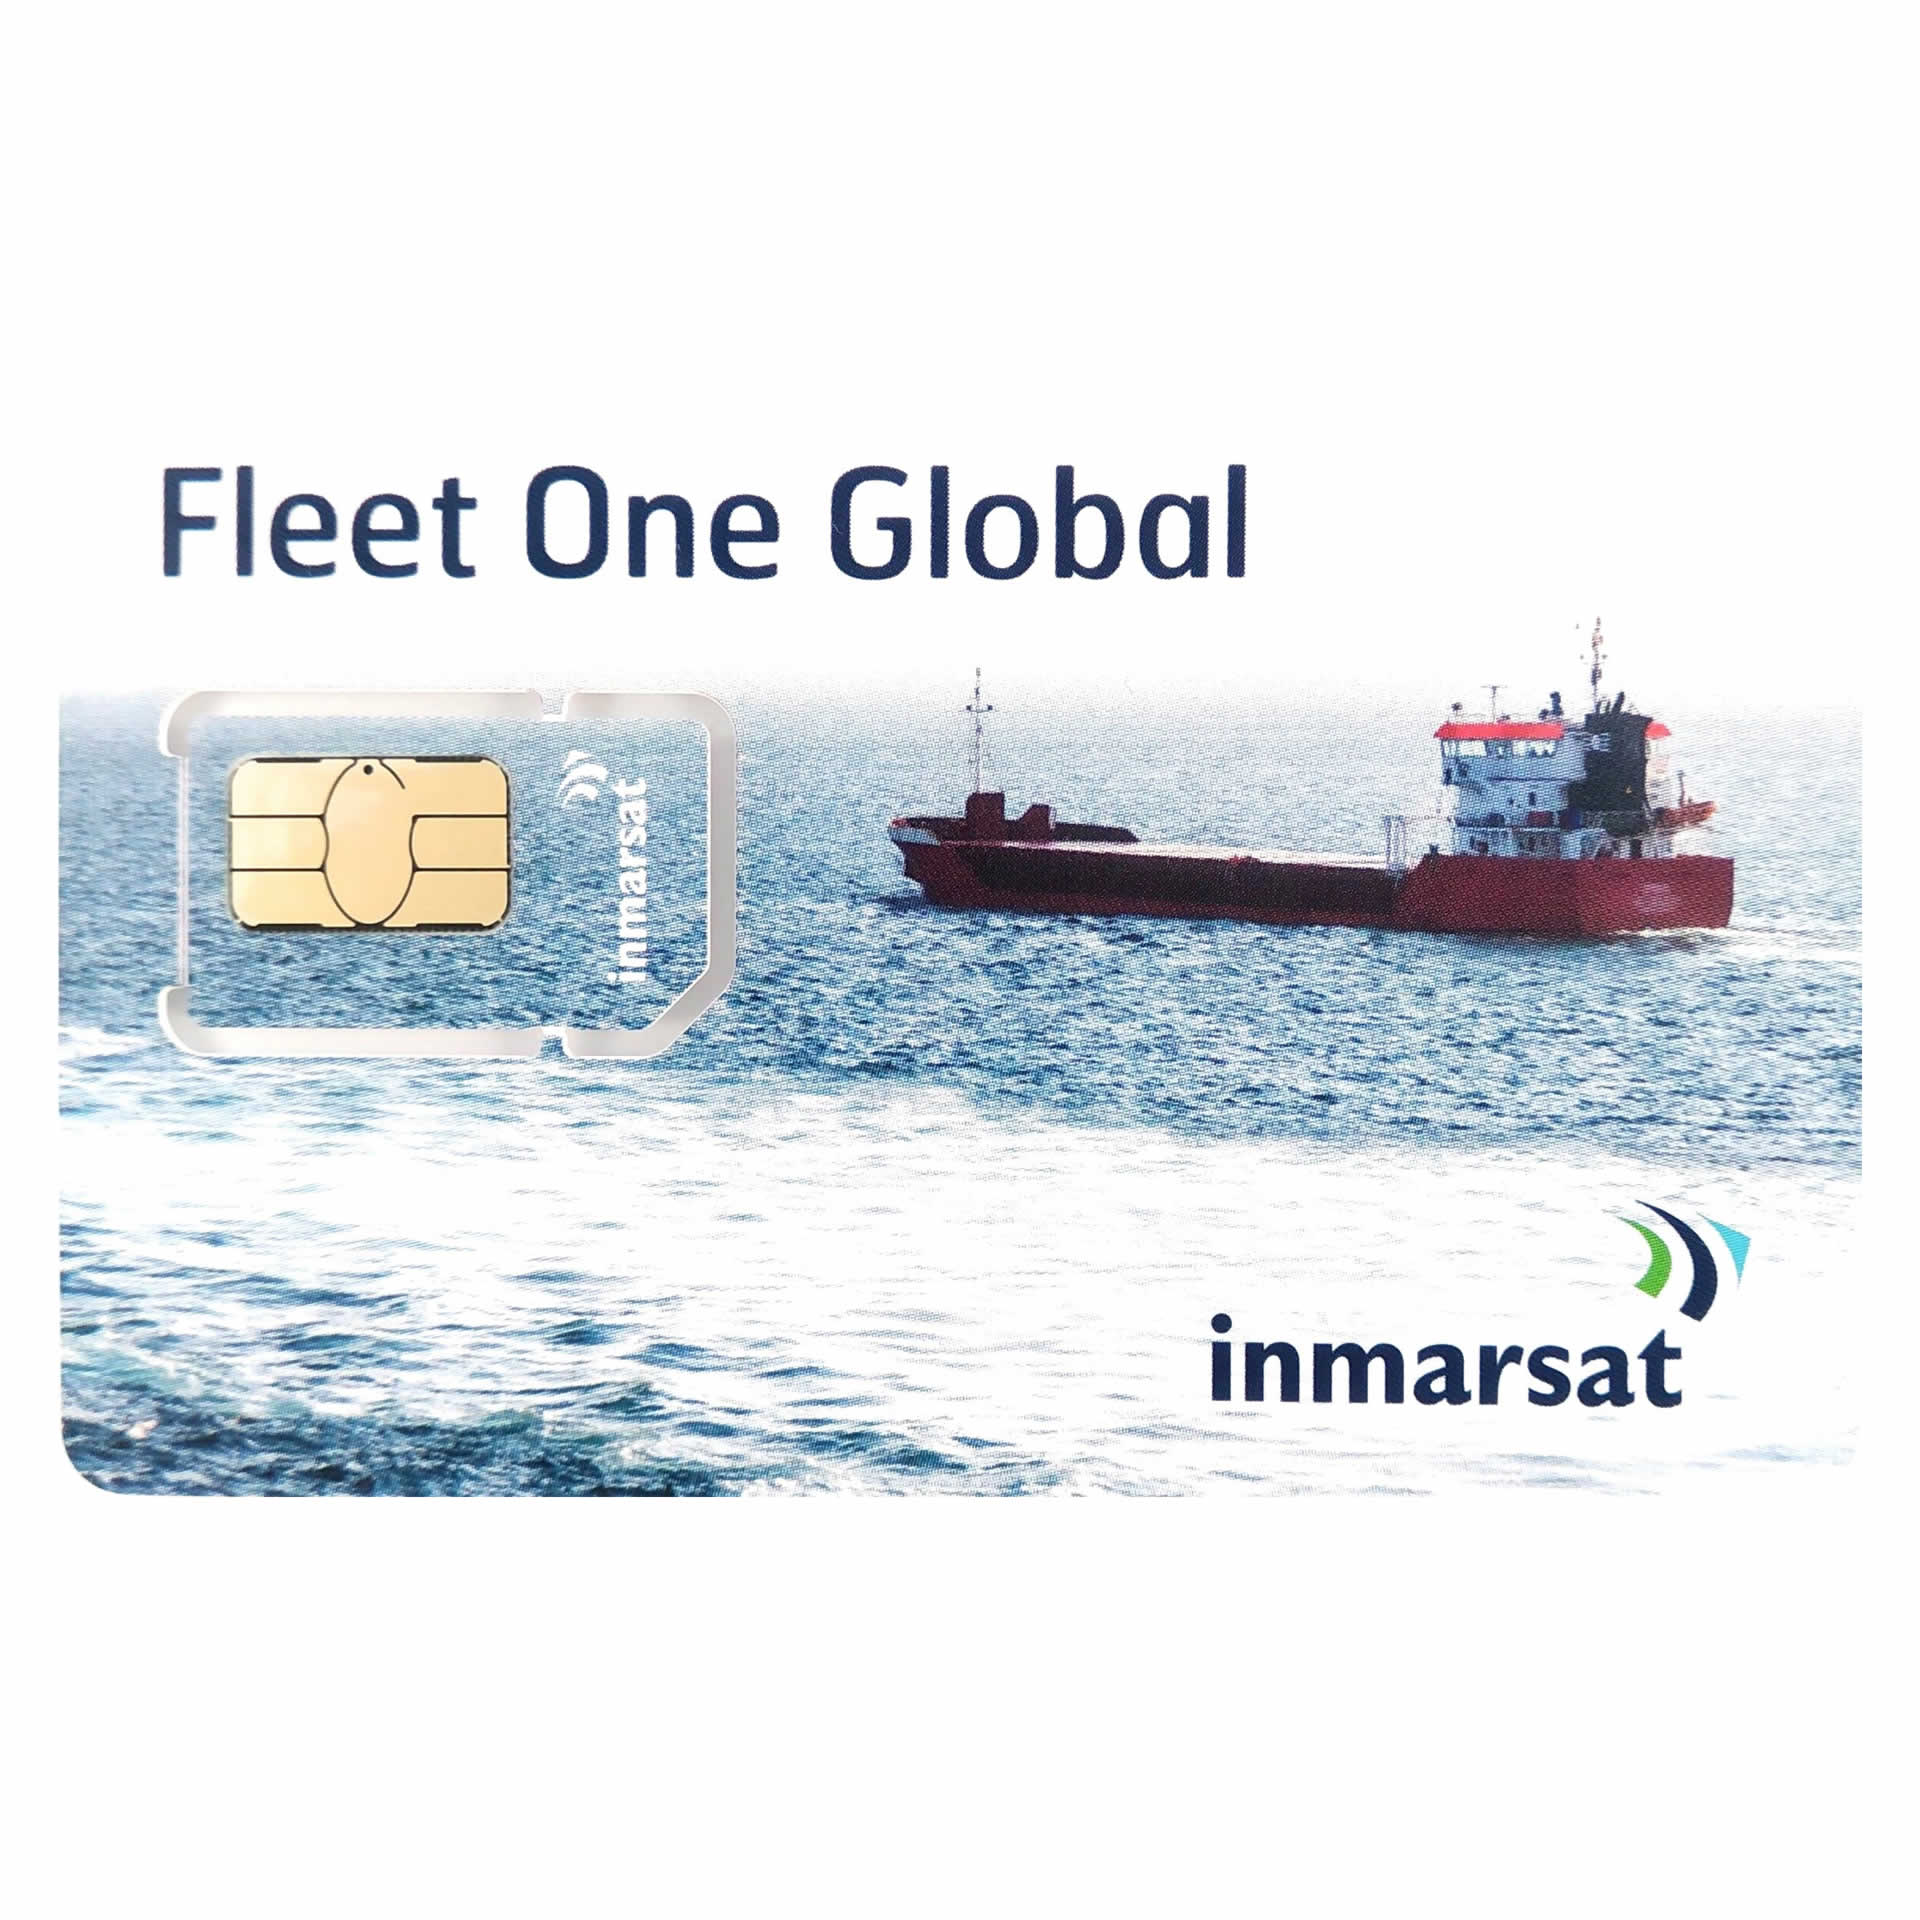 INMARSAT GLOBAL FLEET ONE Prepaid Reloadable Card - 50 UNITS - 30 DAYS